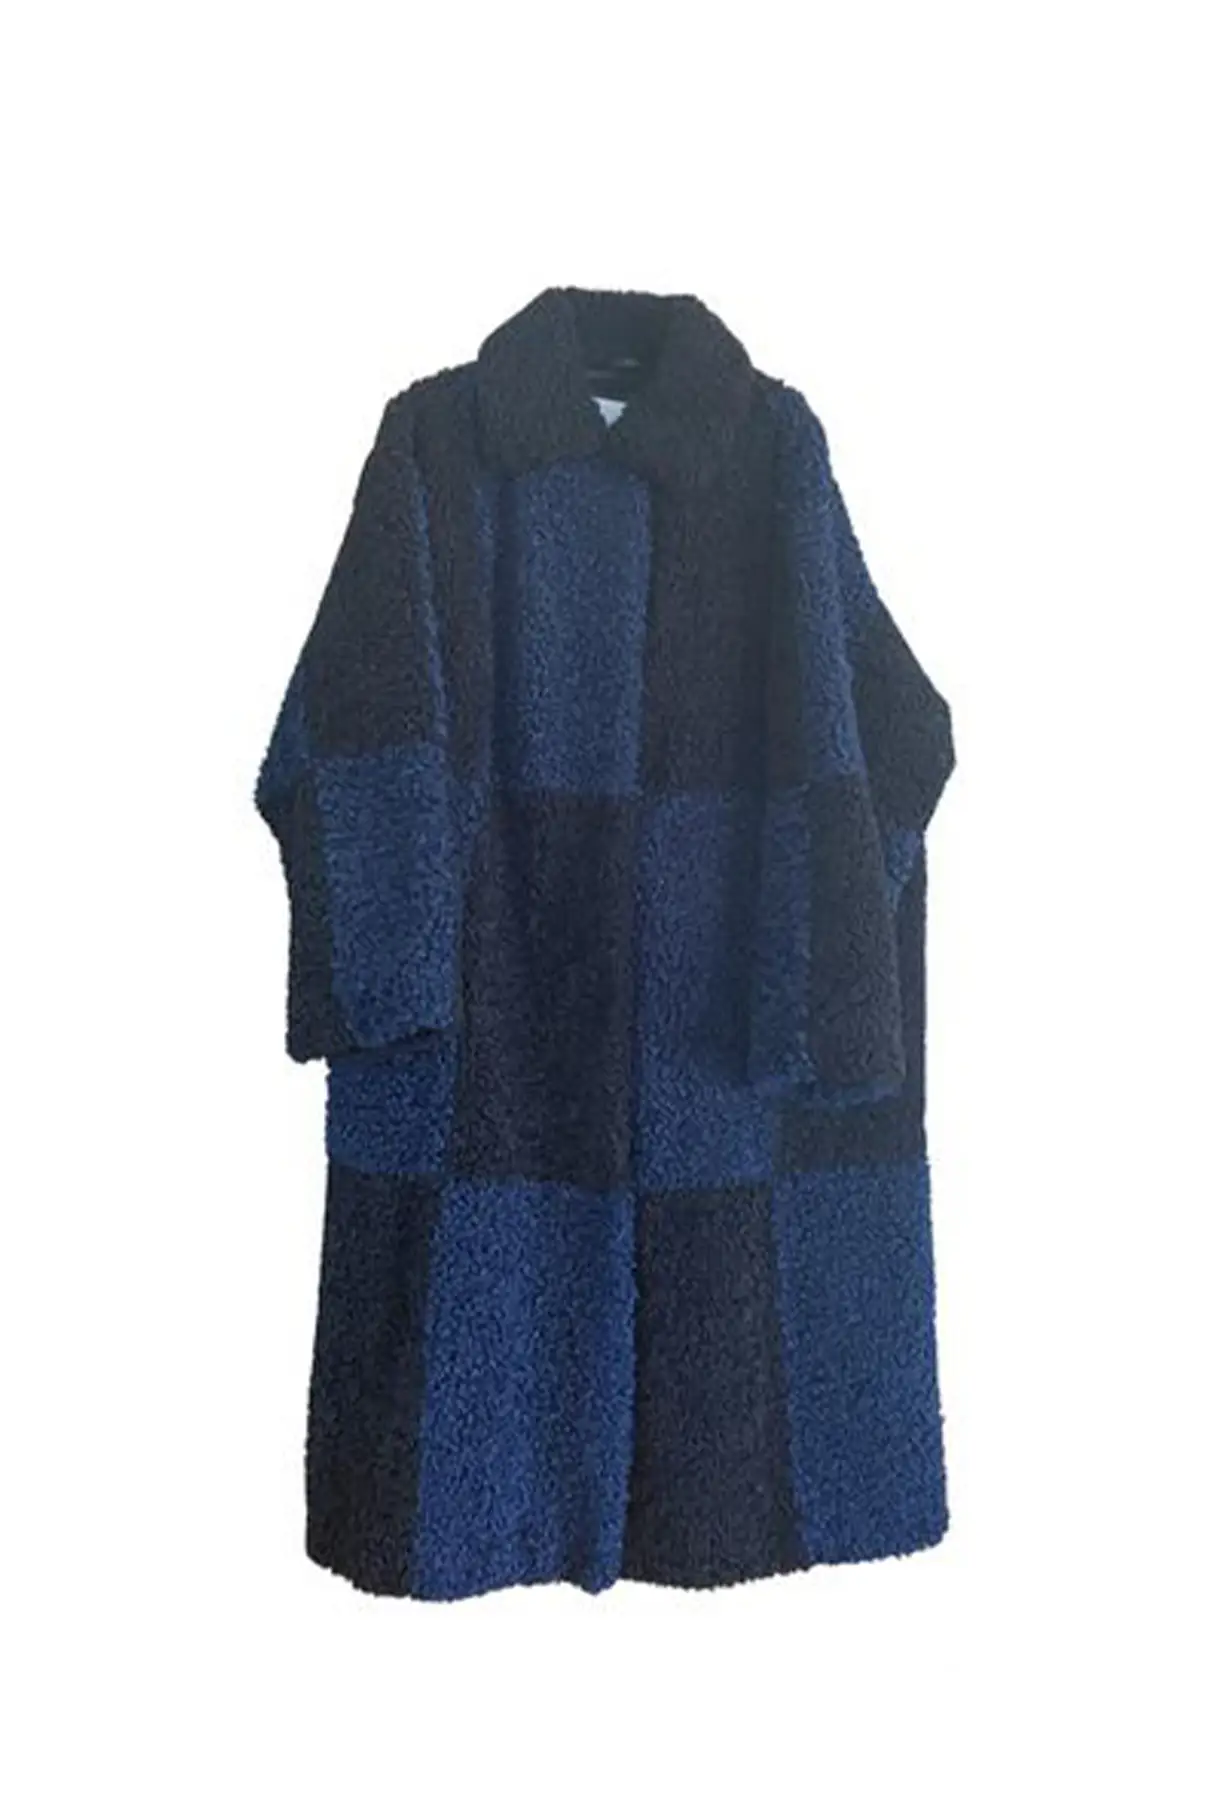 blue-long-teddy-wool-coat.jpg